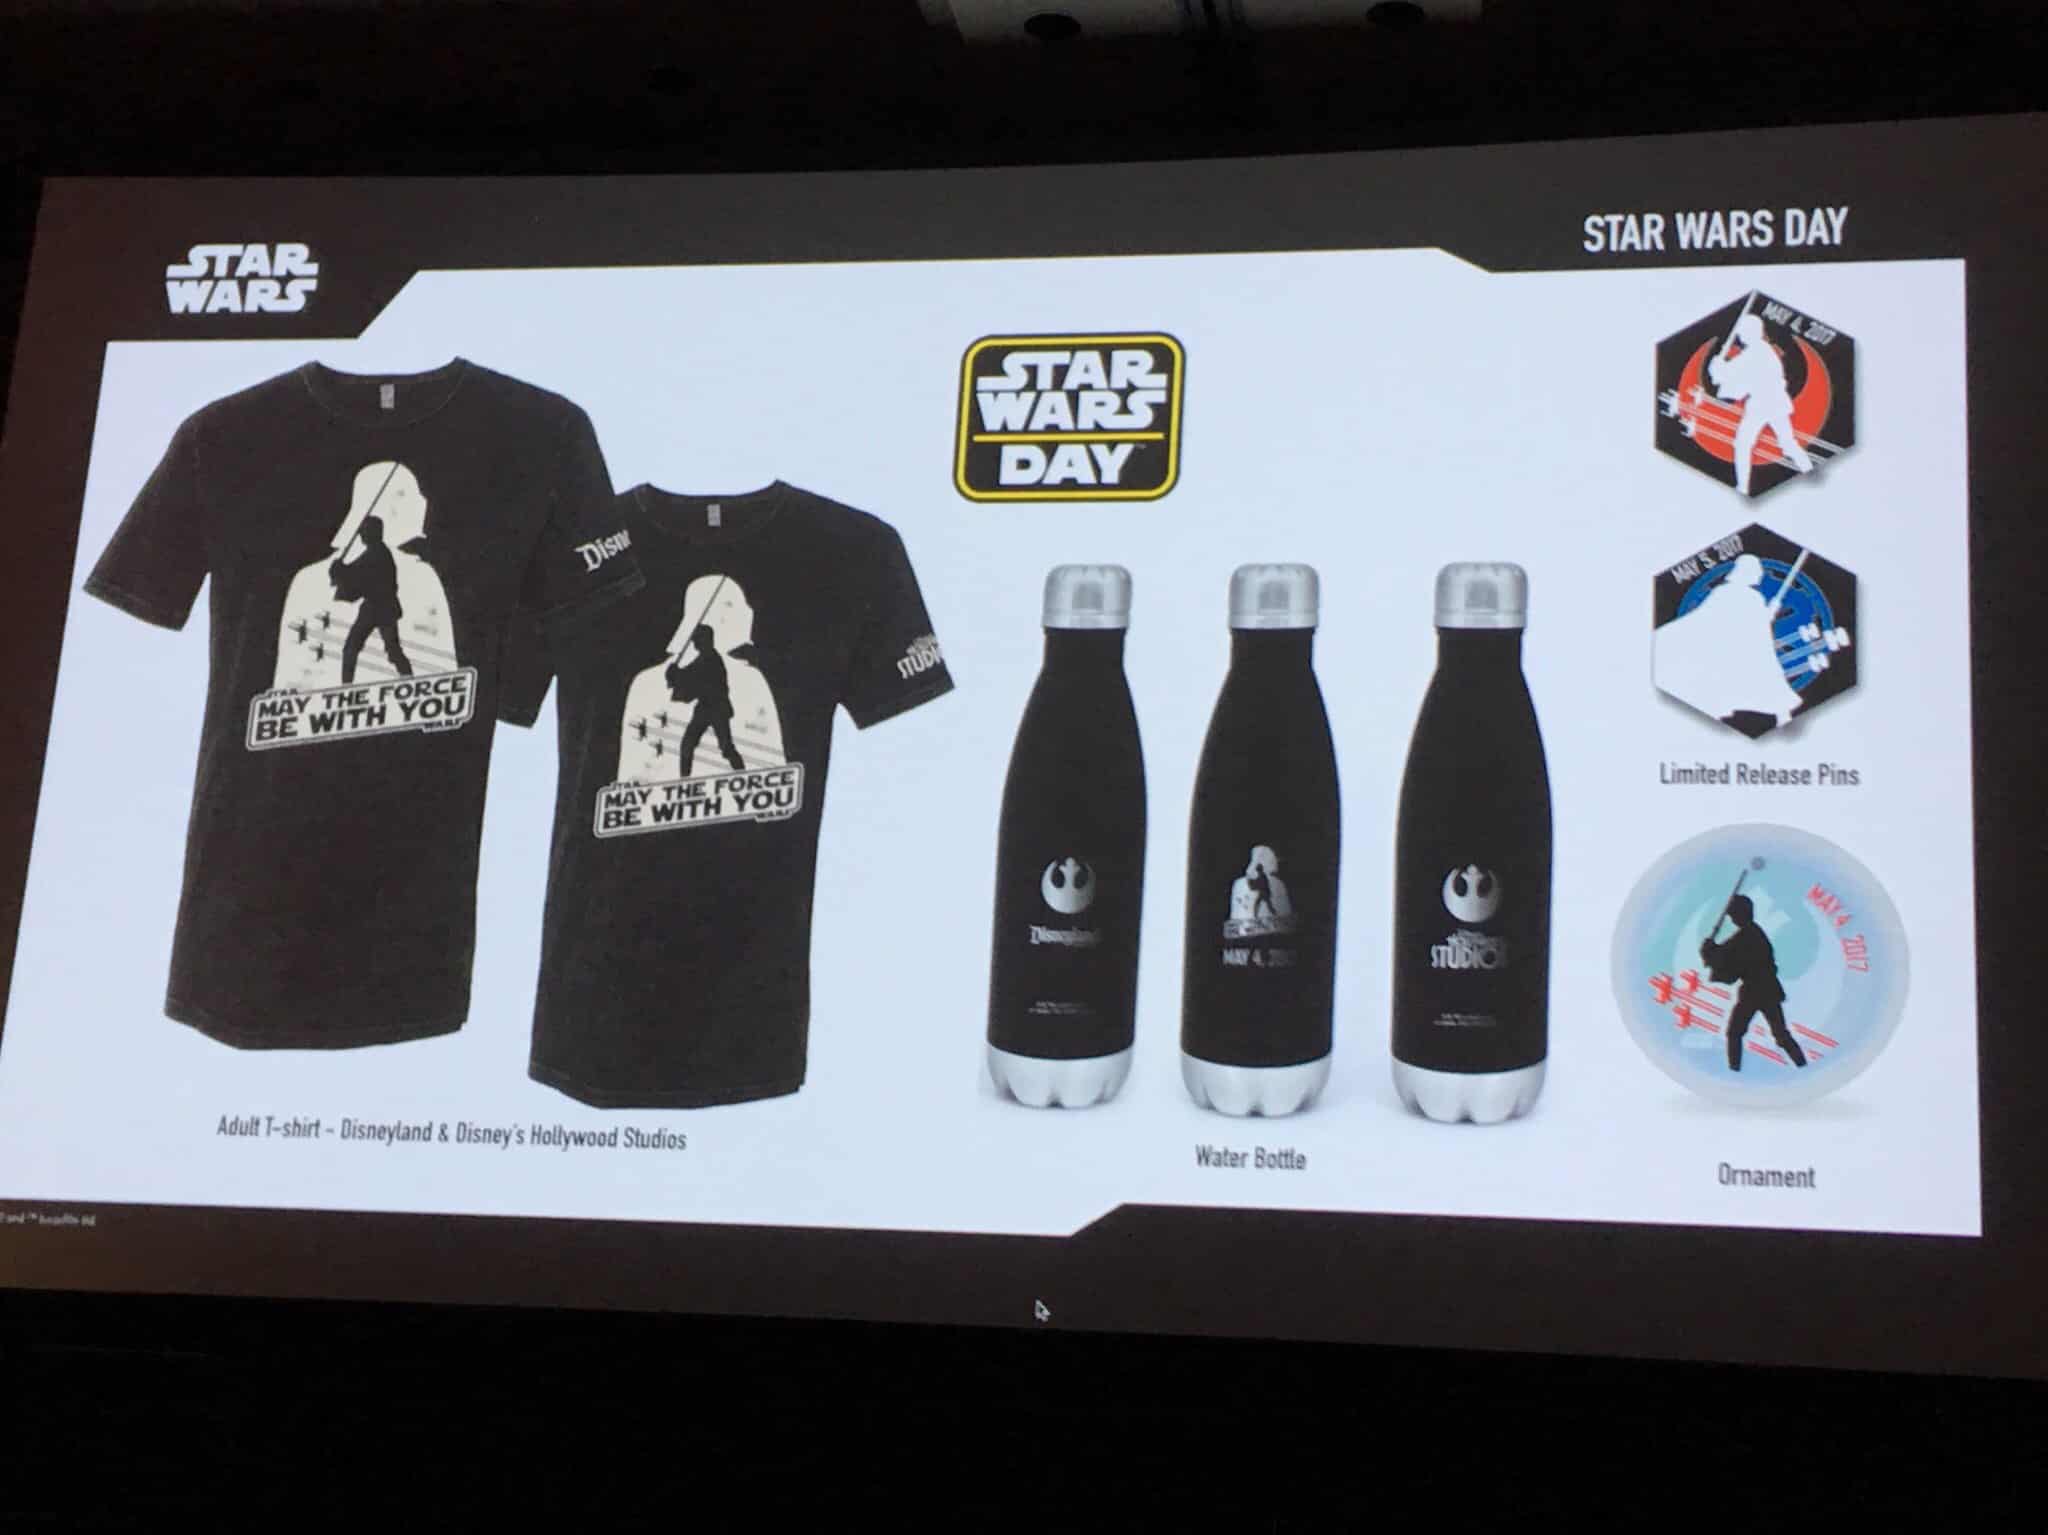 star wars celebration 2019 merchandise